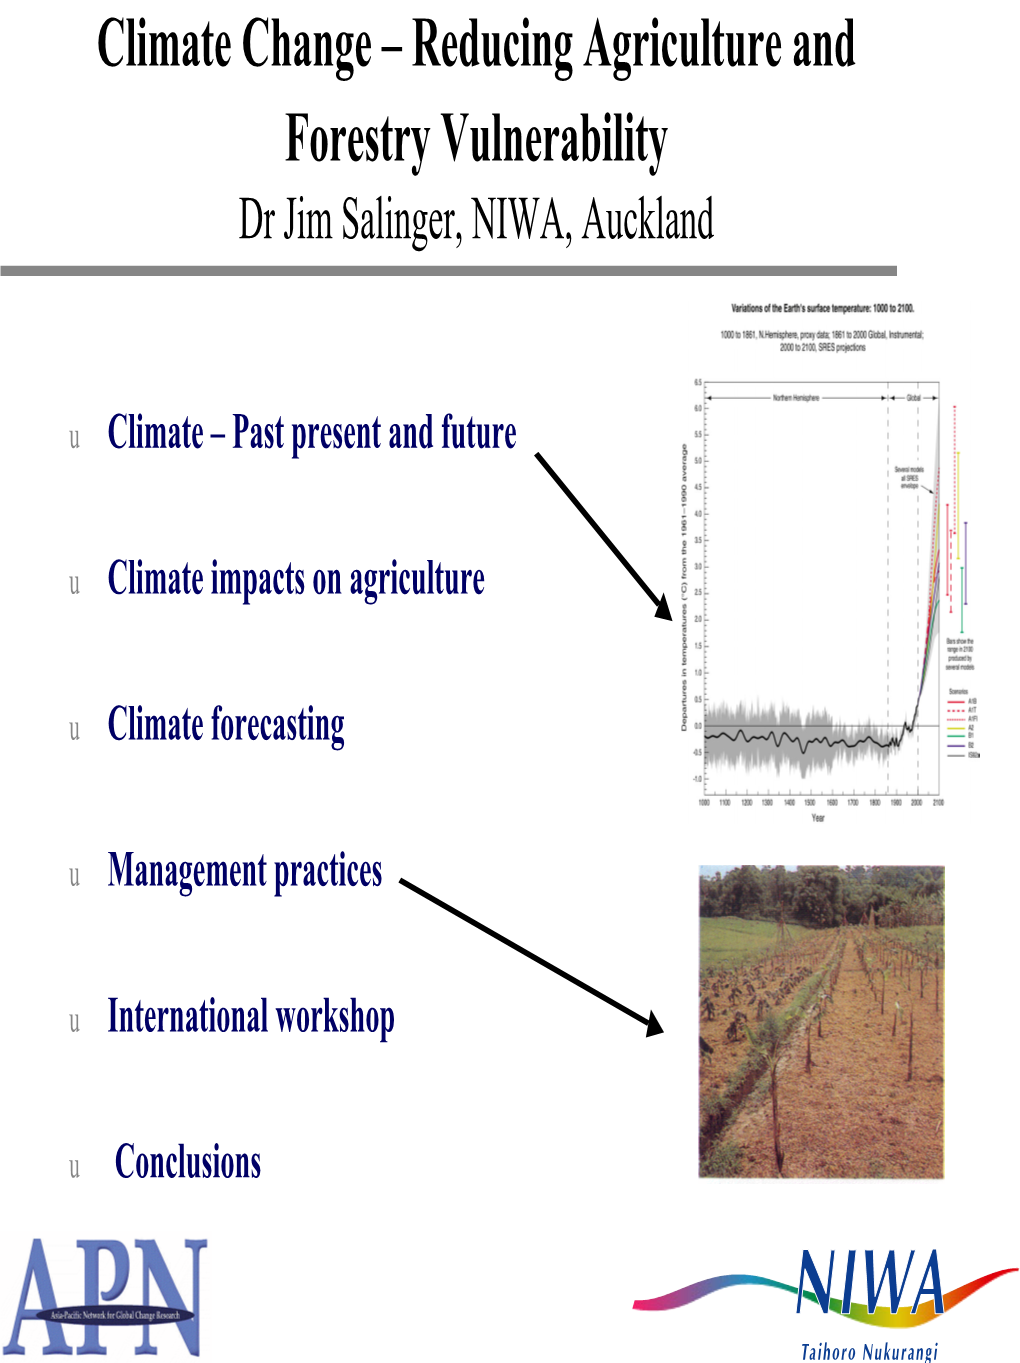 Climate Forecasting at NIWA